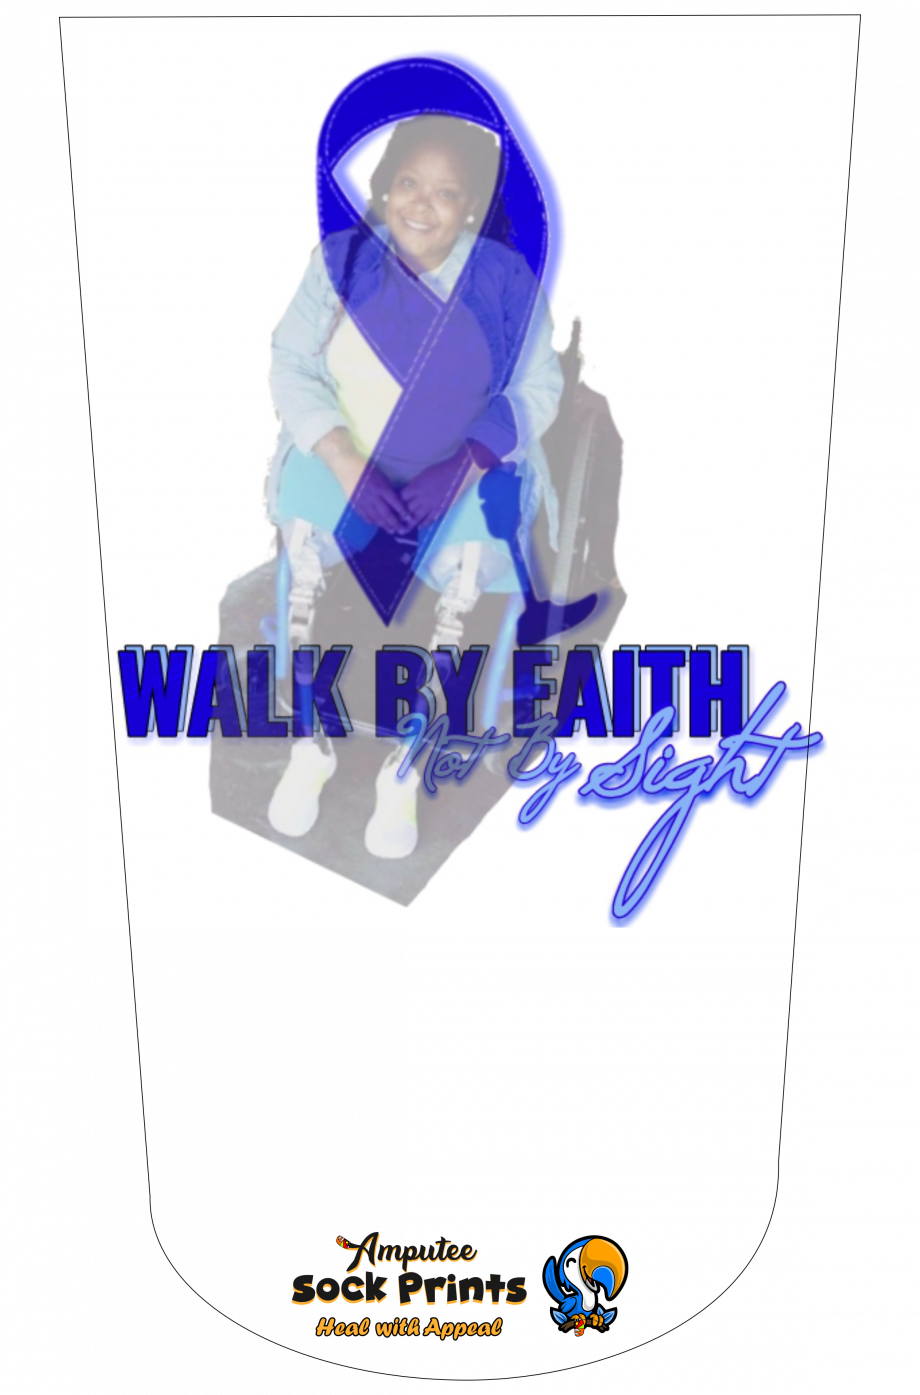 Walk By Faith mockup